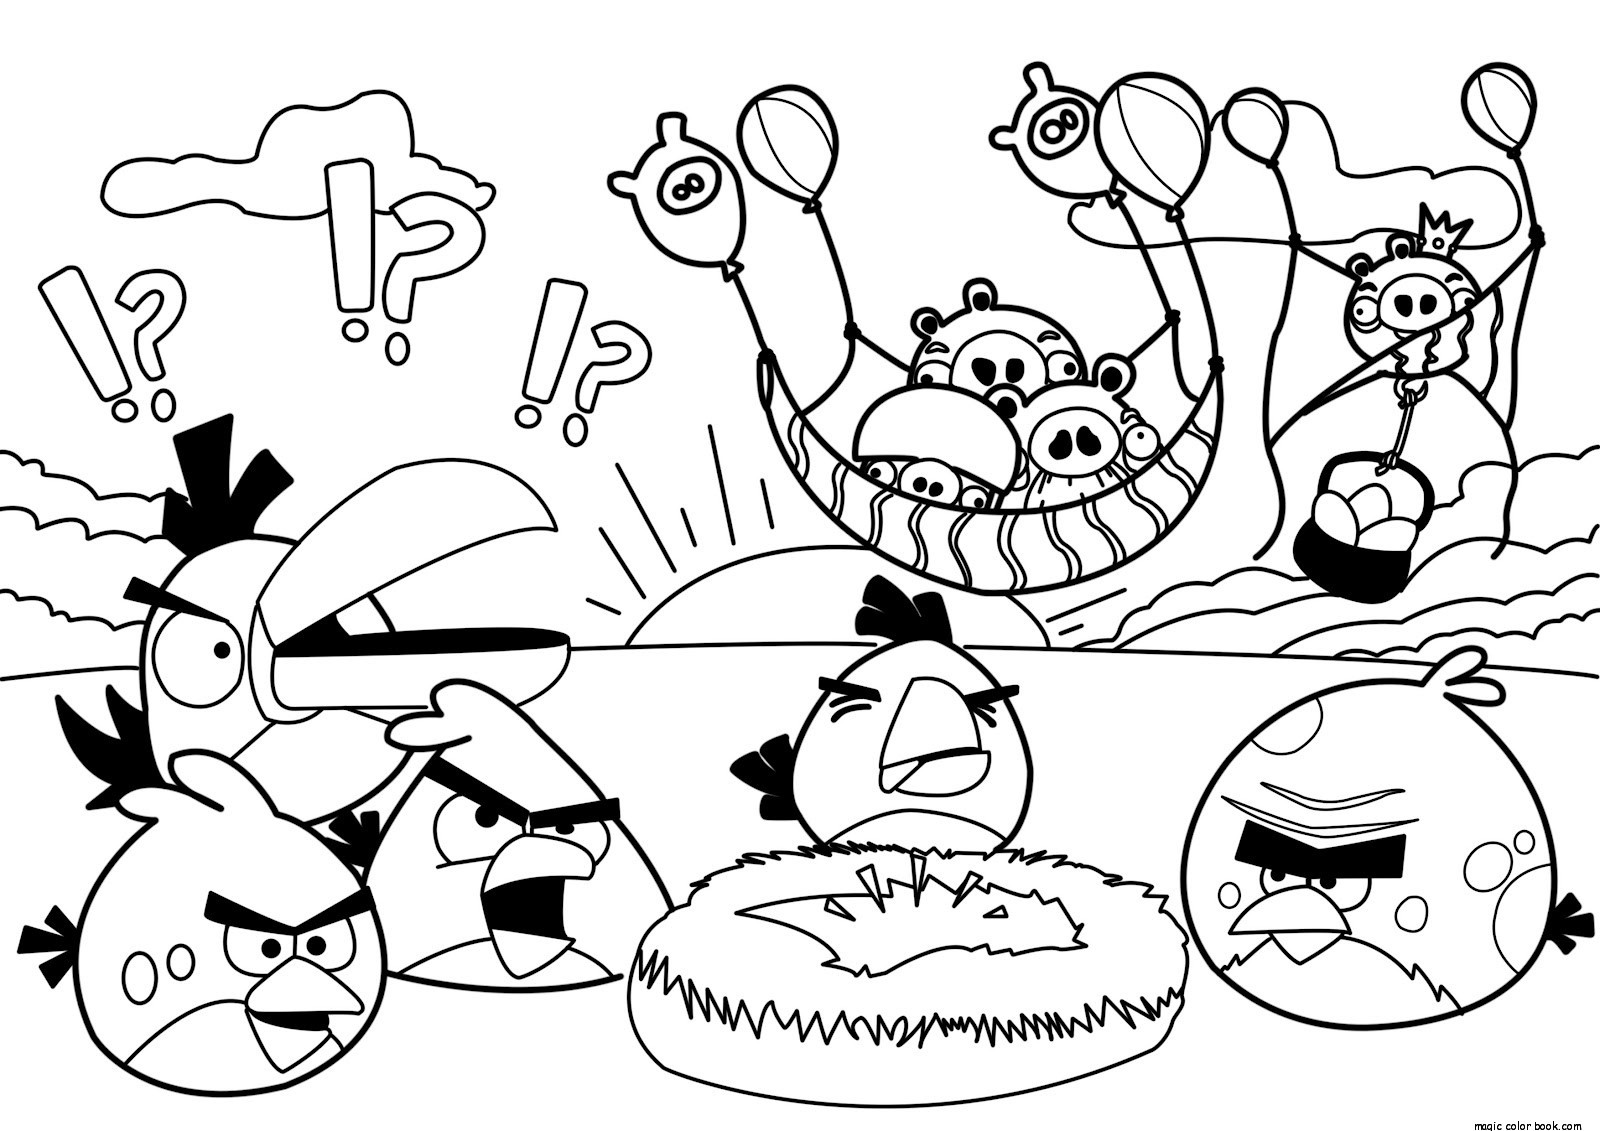 Раскраски детские Angry Birds. Раскраски для детей с играми.  Скачать бесплатные раскраски для детей. Раскраски детские Angry Birds. Раскраски для детей с играми. Раскраски для детей скачать. Бесплатные детские раскраски.